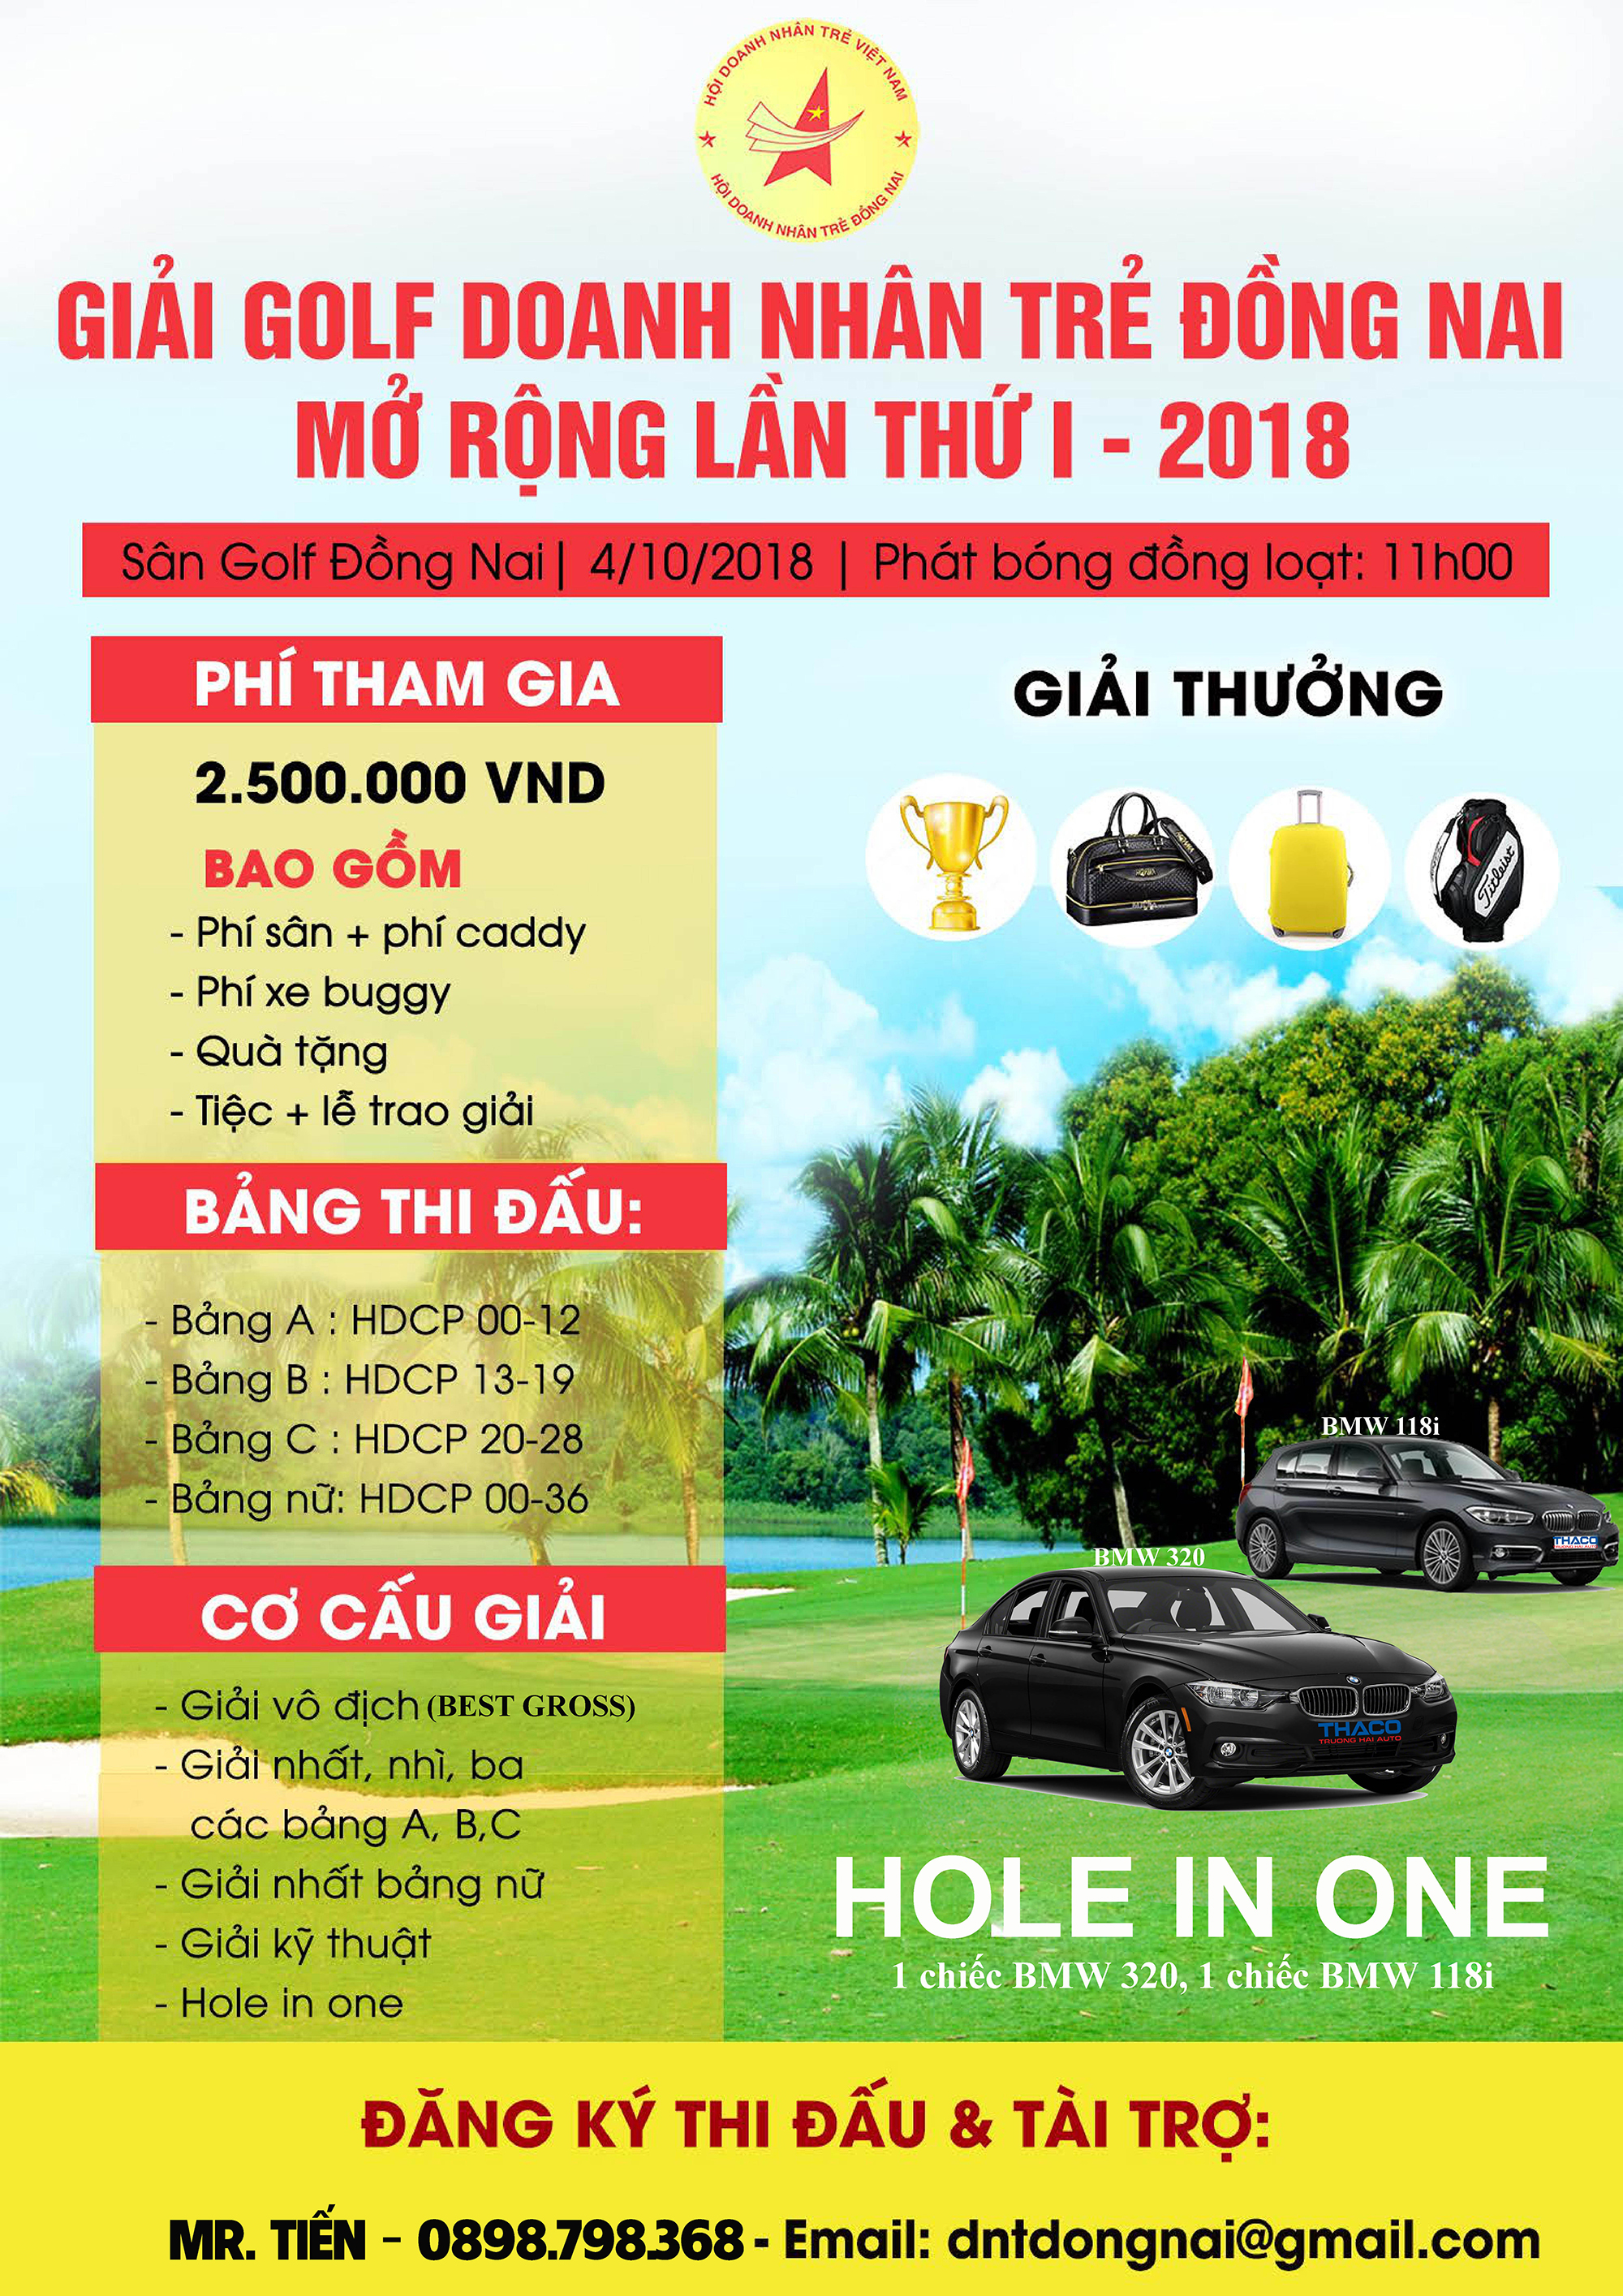 Giải golf Doanh nhân trẻ Đồng Nai Mở rộng Lần thứ 1 - 2018 chuẩn bị khởi tranh